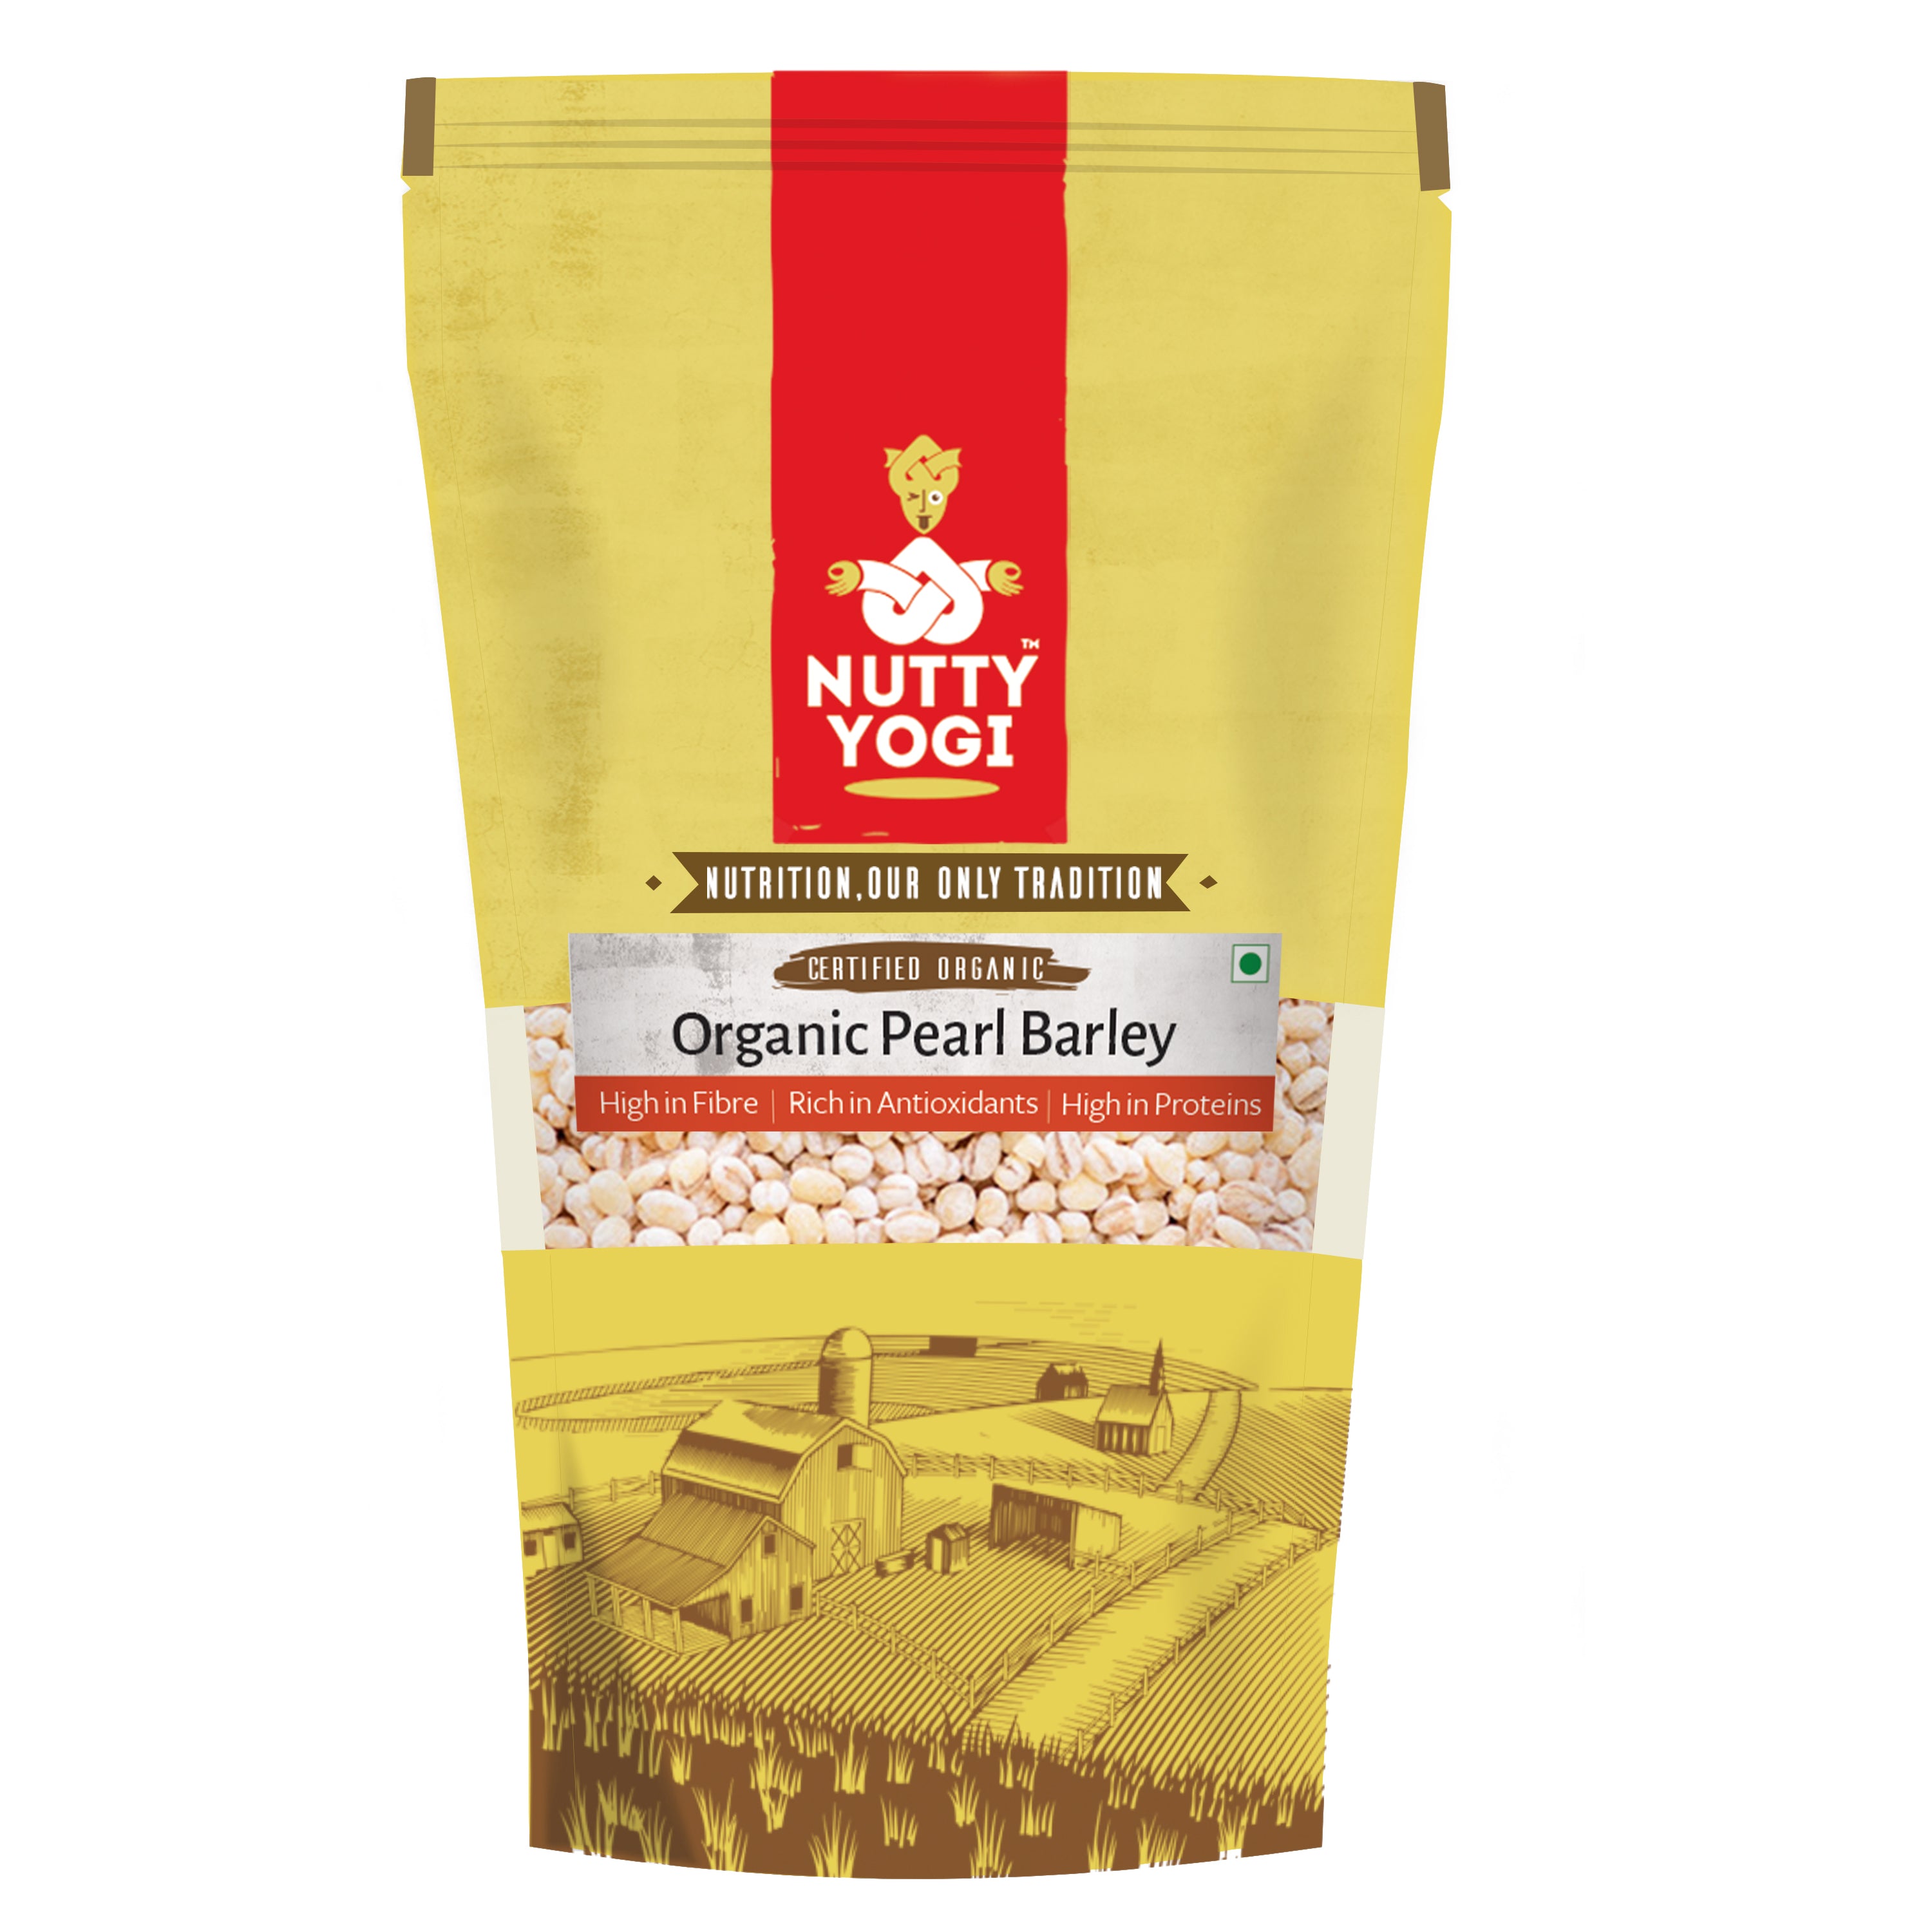 Nutty Yogi Organic Pearl Barley